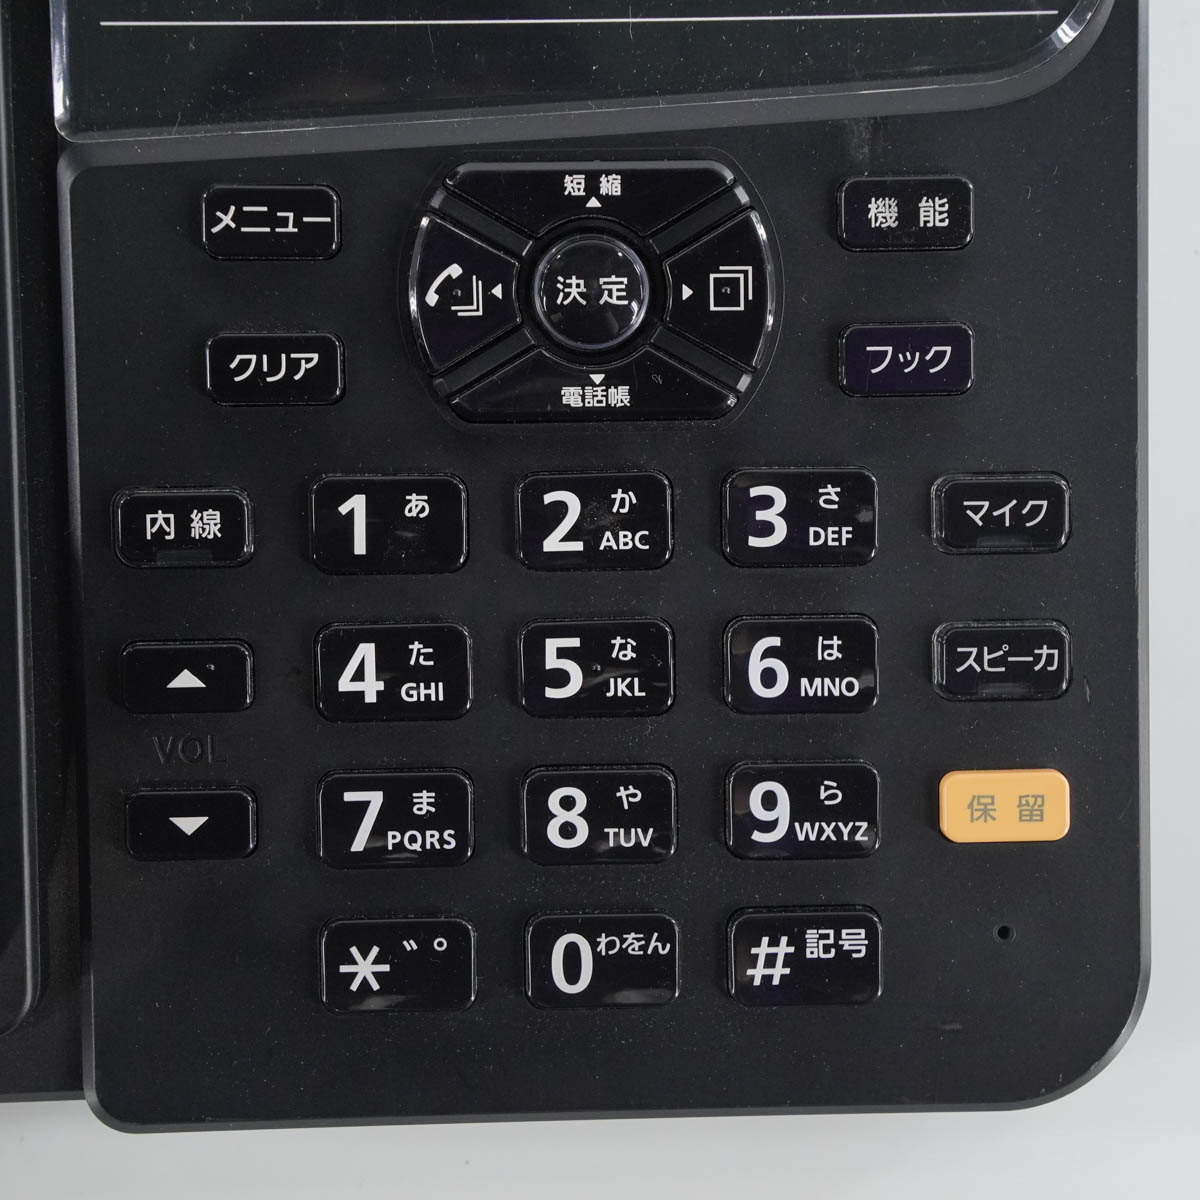 PG]USED 8日保証 セット NTT αZX ZXS-ME-(1) 主装置 電話機 ビジネス 